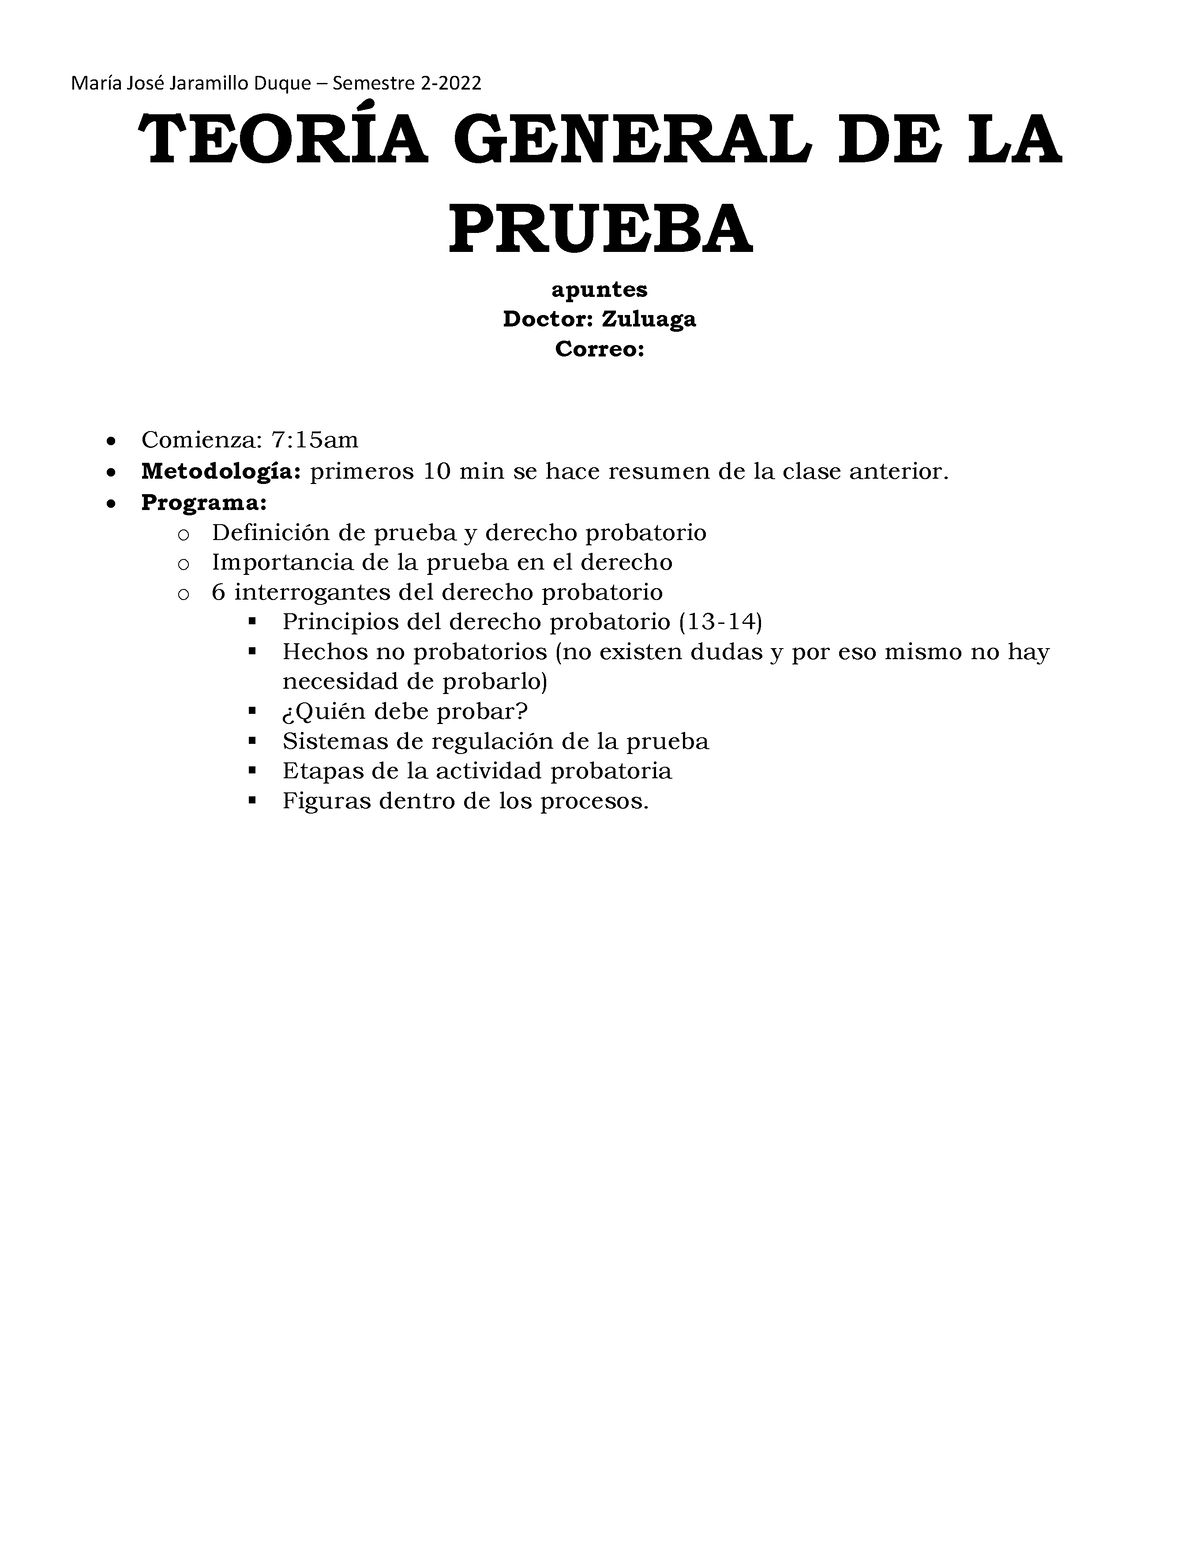 Final Teoría General De La Prueba TeorÍa General De La Prueba Apuntes Doctor Zuluaga Correo 1480